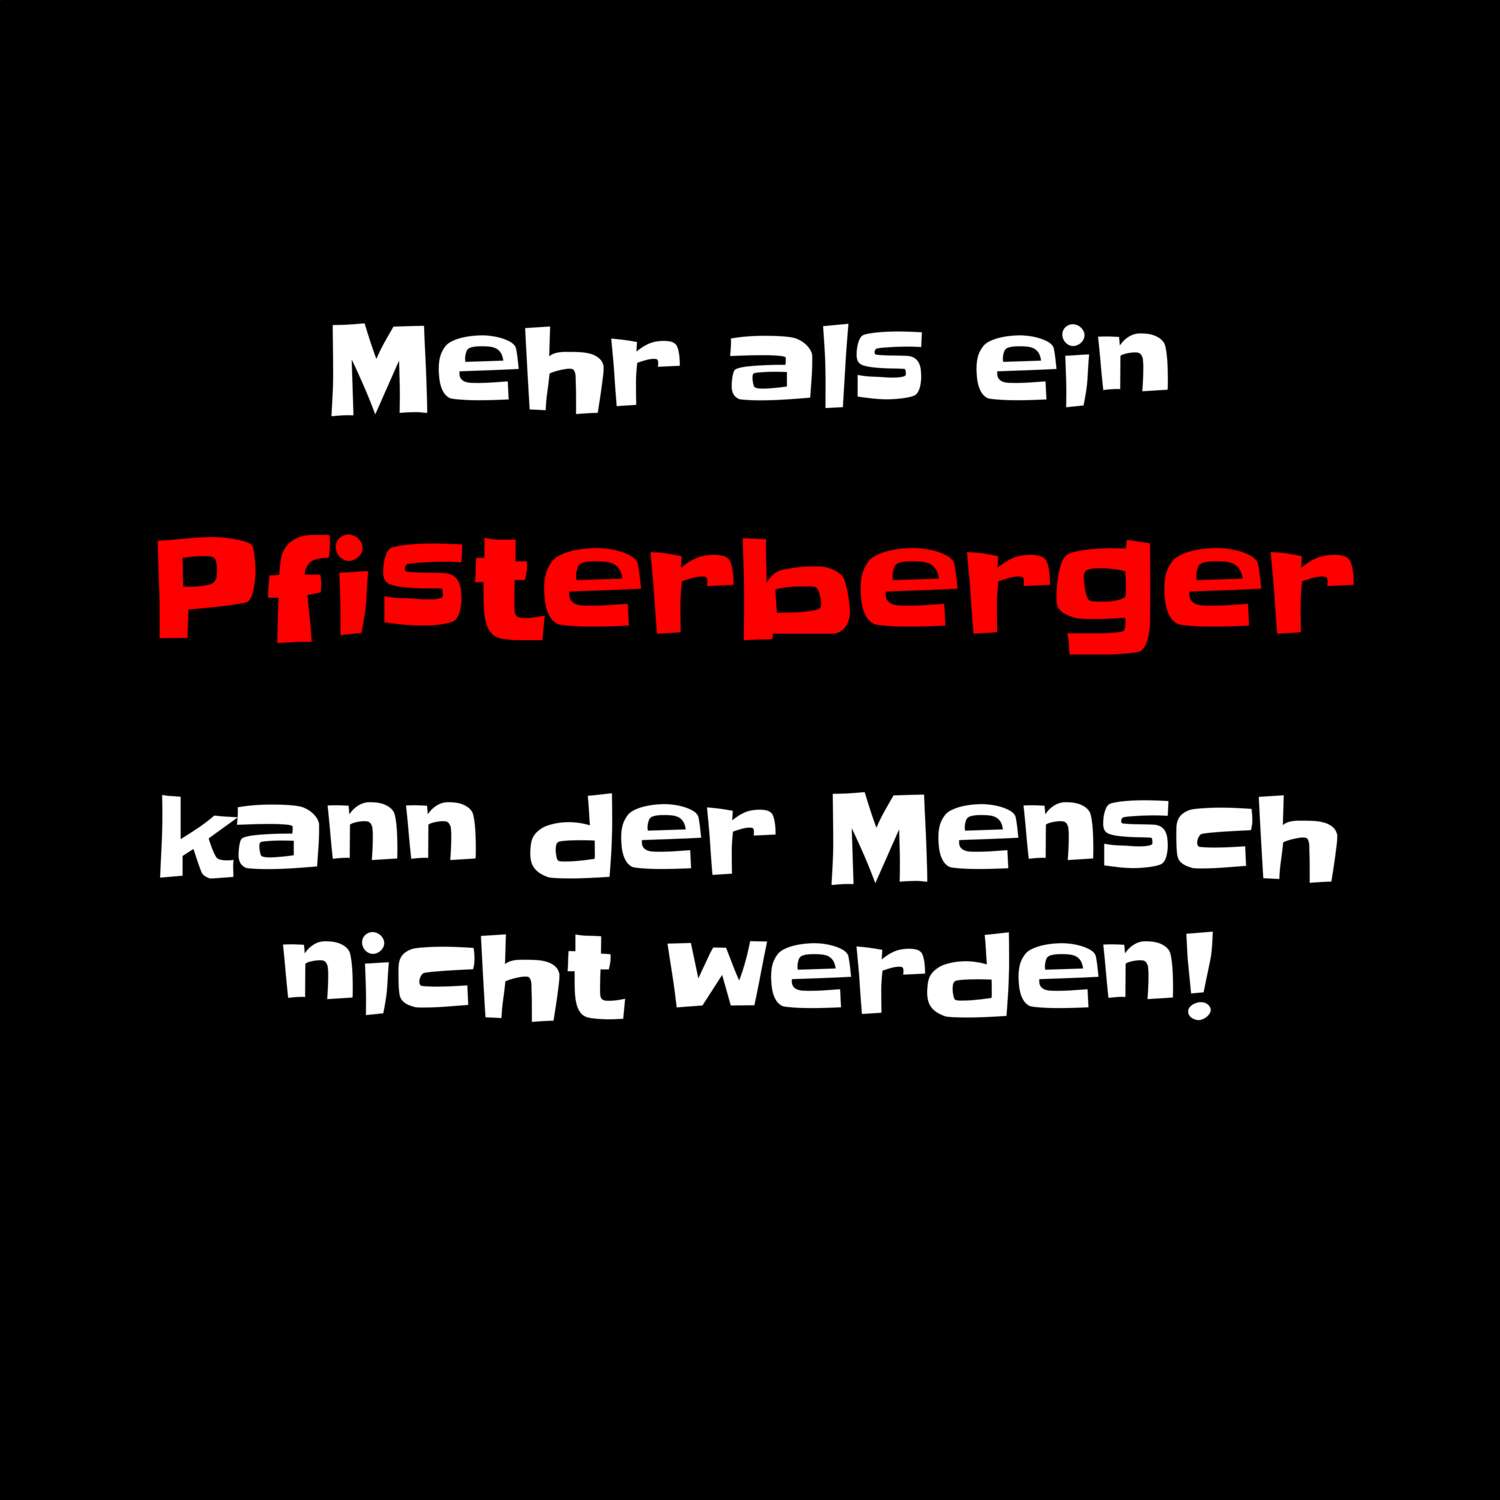 Pfisterberg T-Shirt »Mehr als ein«